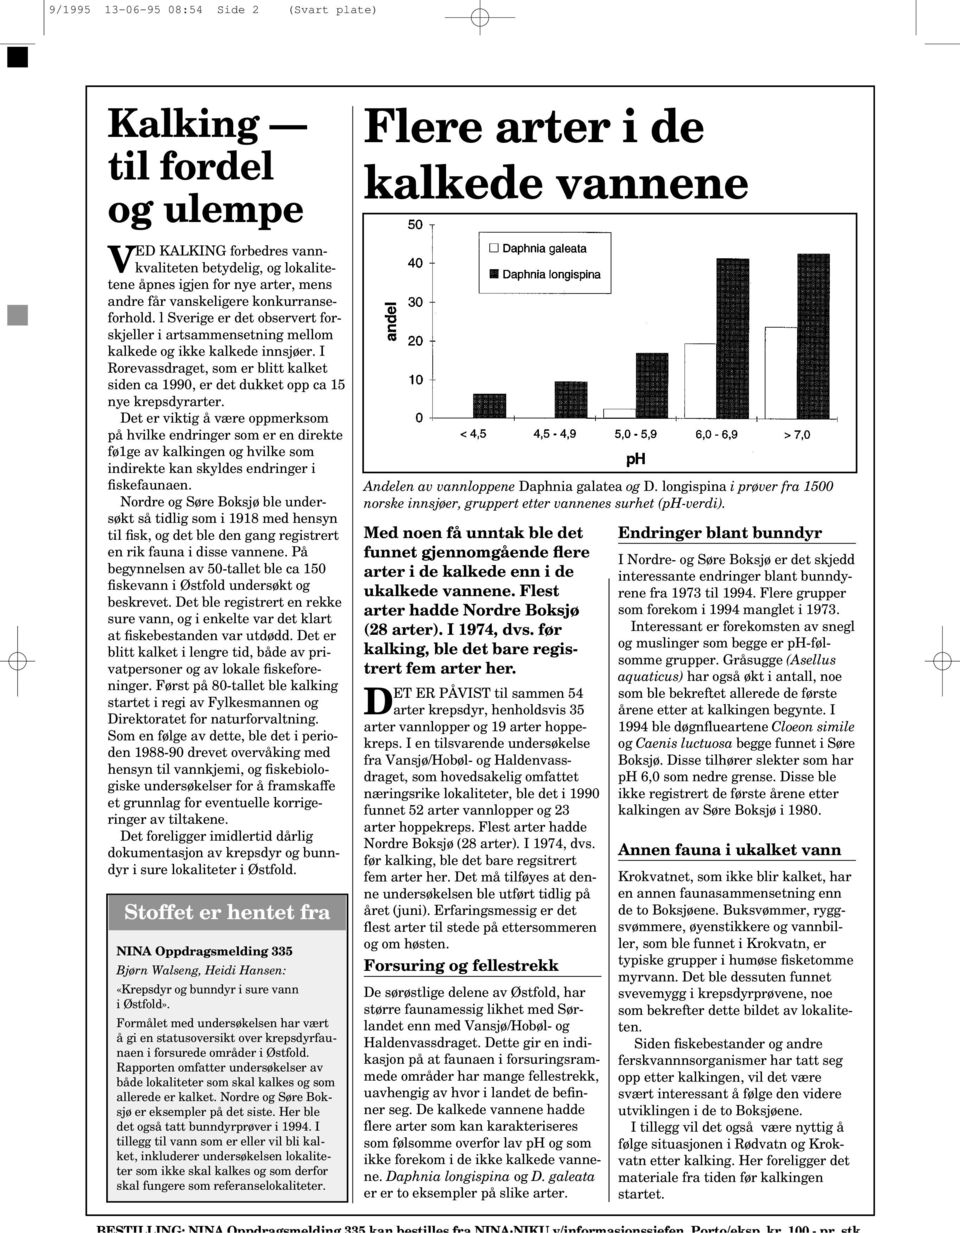 l Sverige er det observert forskjeller i artsammensetning mellom kalkede og ikke kalkede innsjøer. I Rorevass, som er blitt kalket siden ca 90, er det dukket opp ca 15 nye krepsdyrarter.